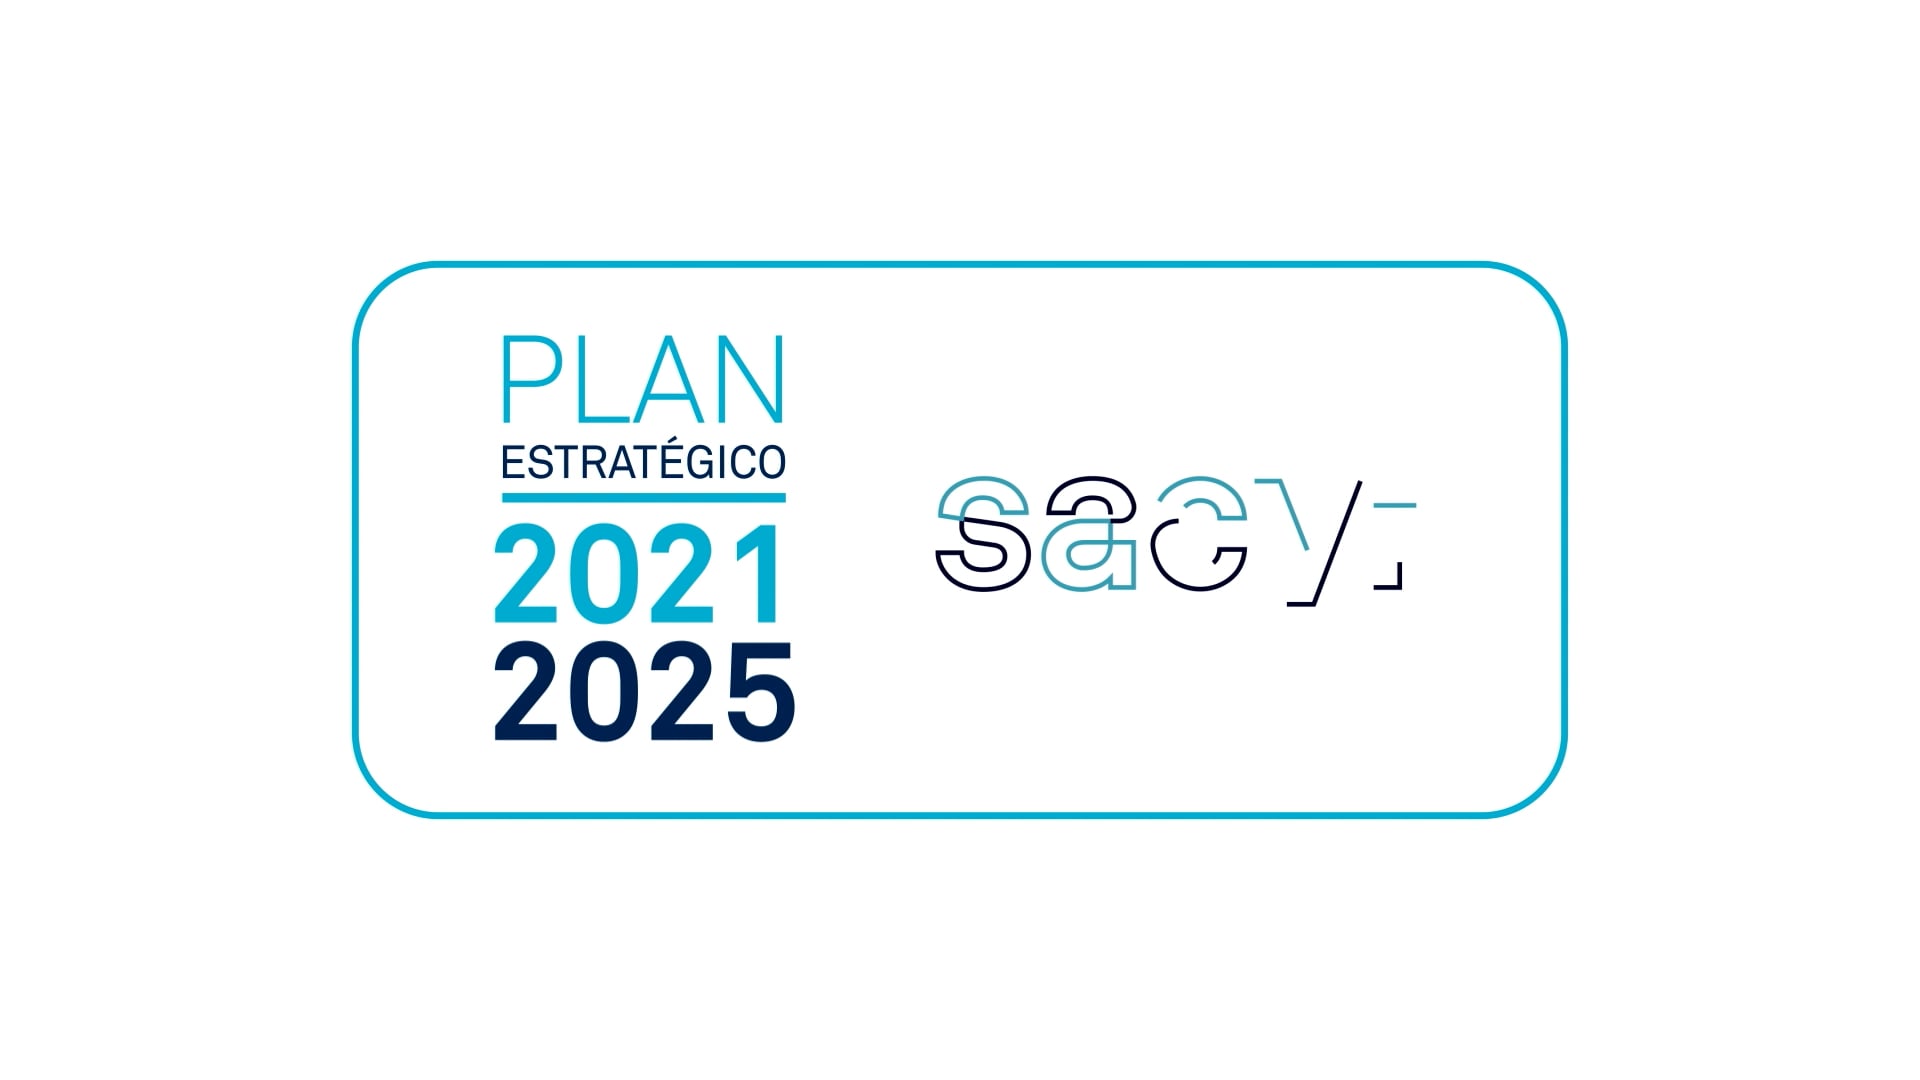 Plan Estratégico Sacyr 2021-2025